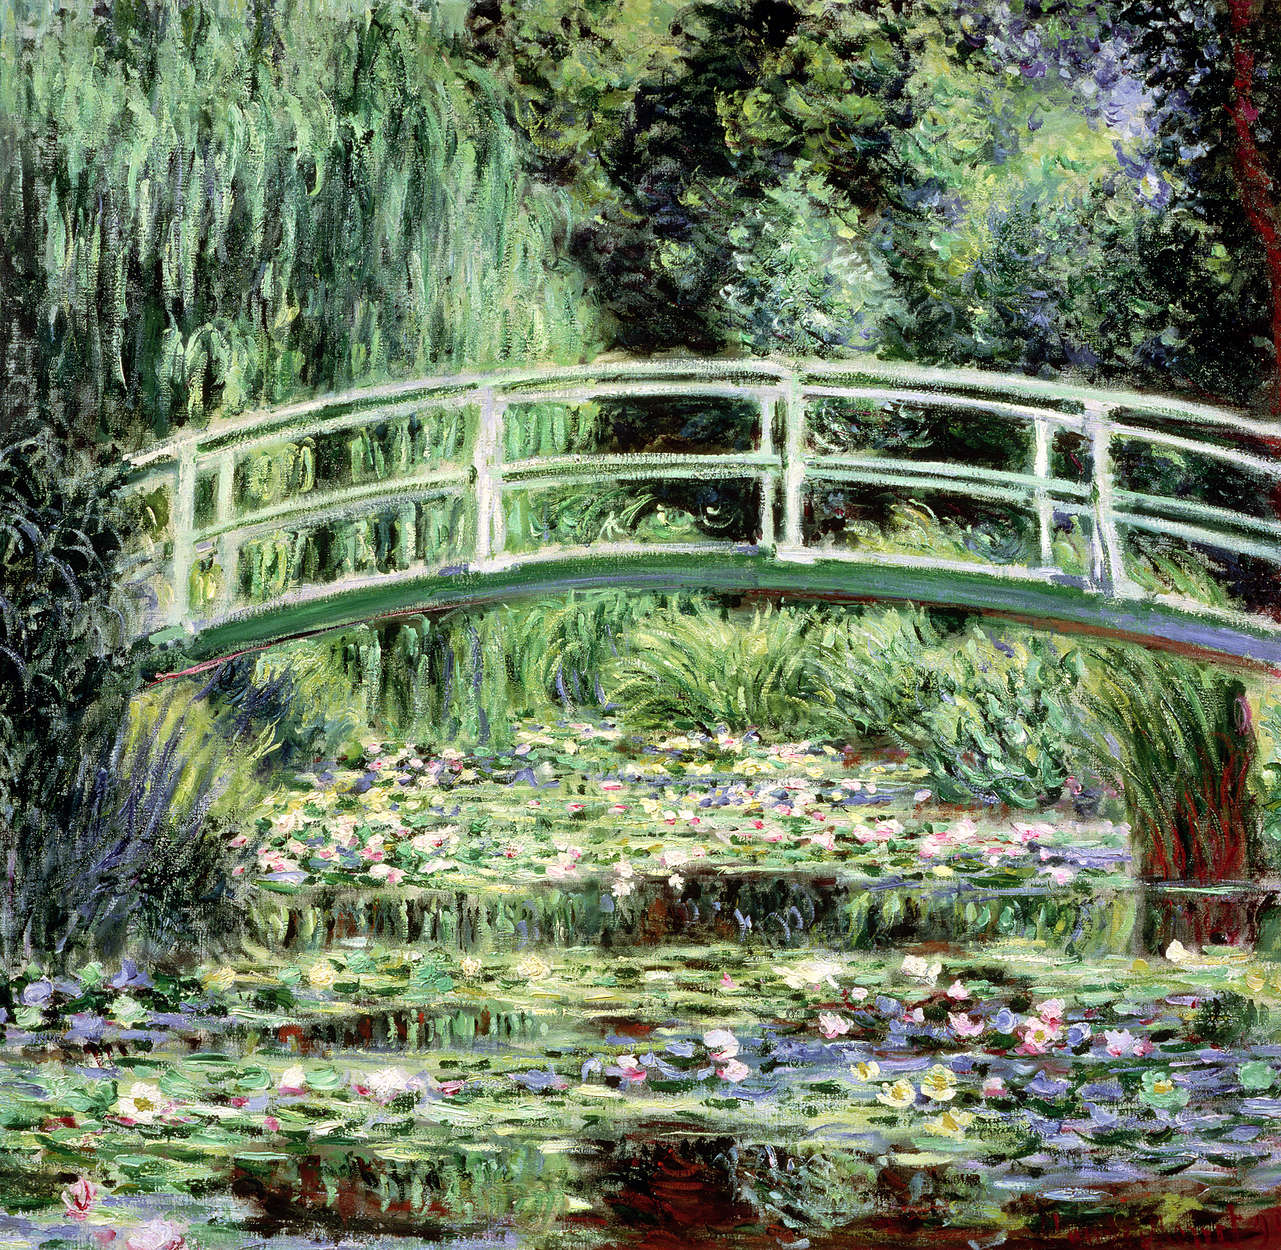             Papier peint panoramique "Nymphéas blancs" de Claude Monet
        